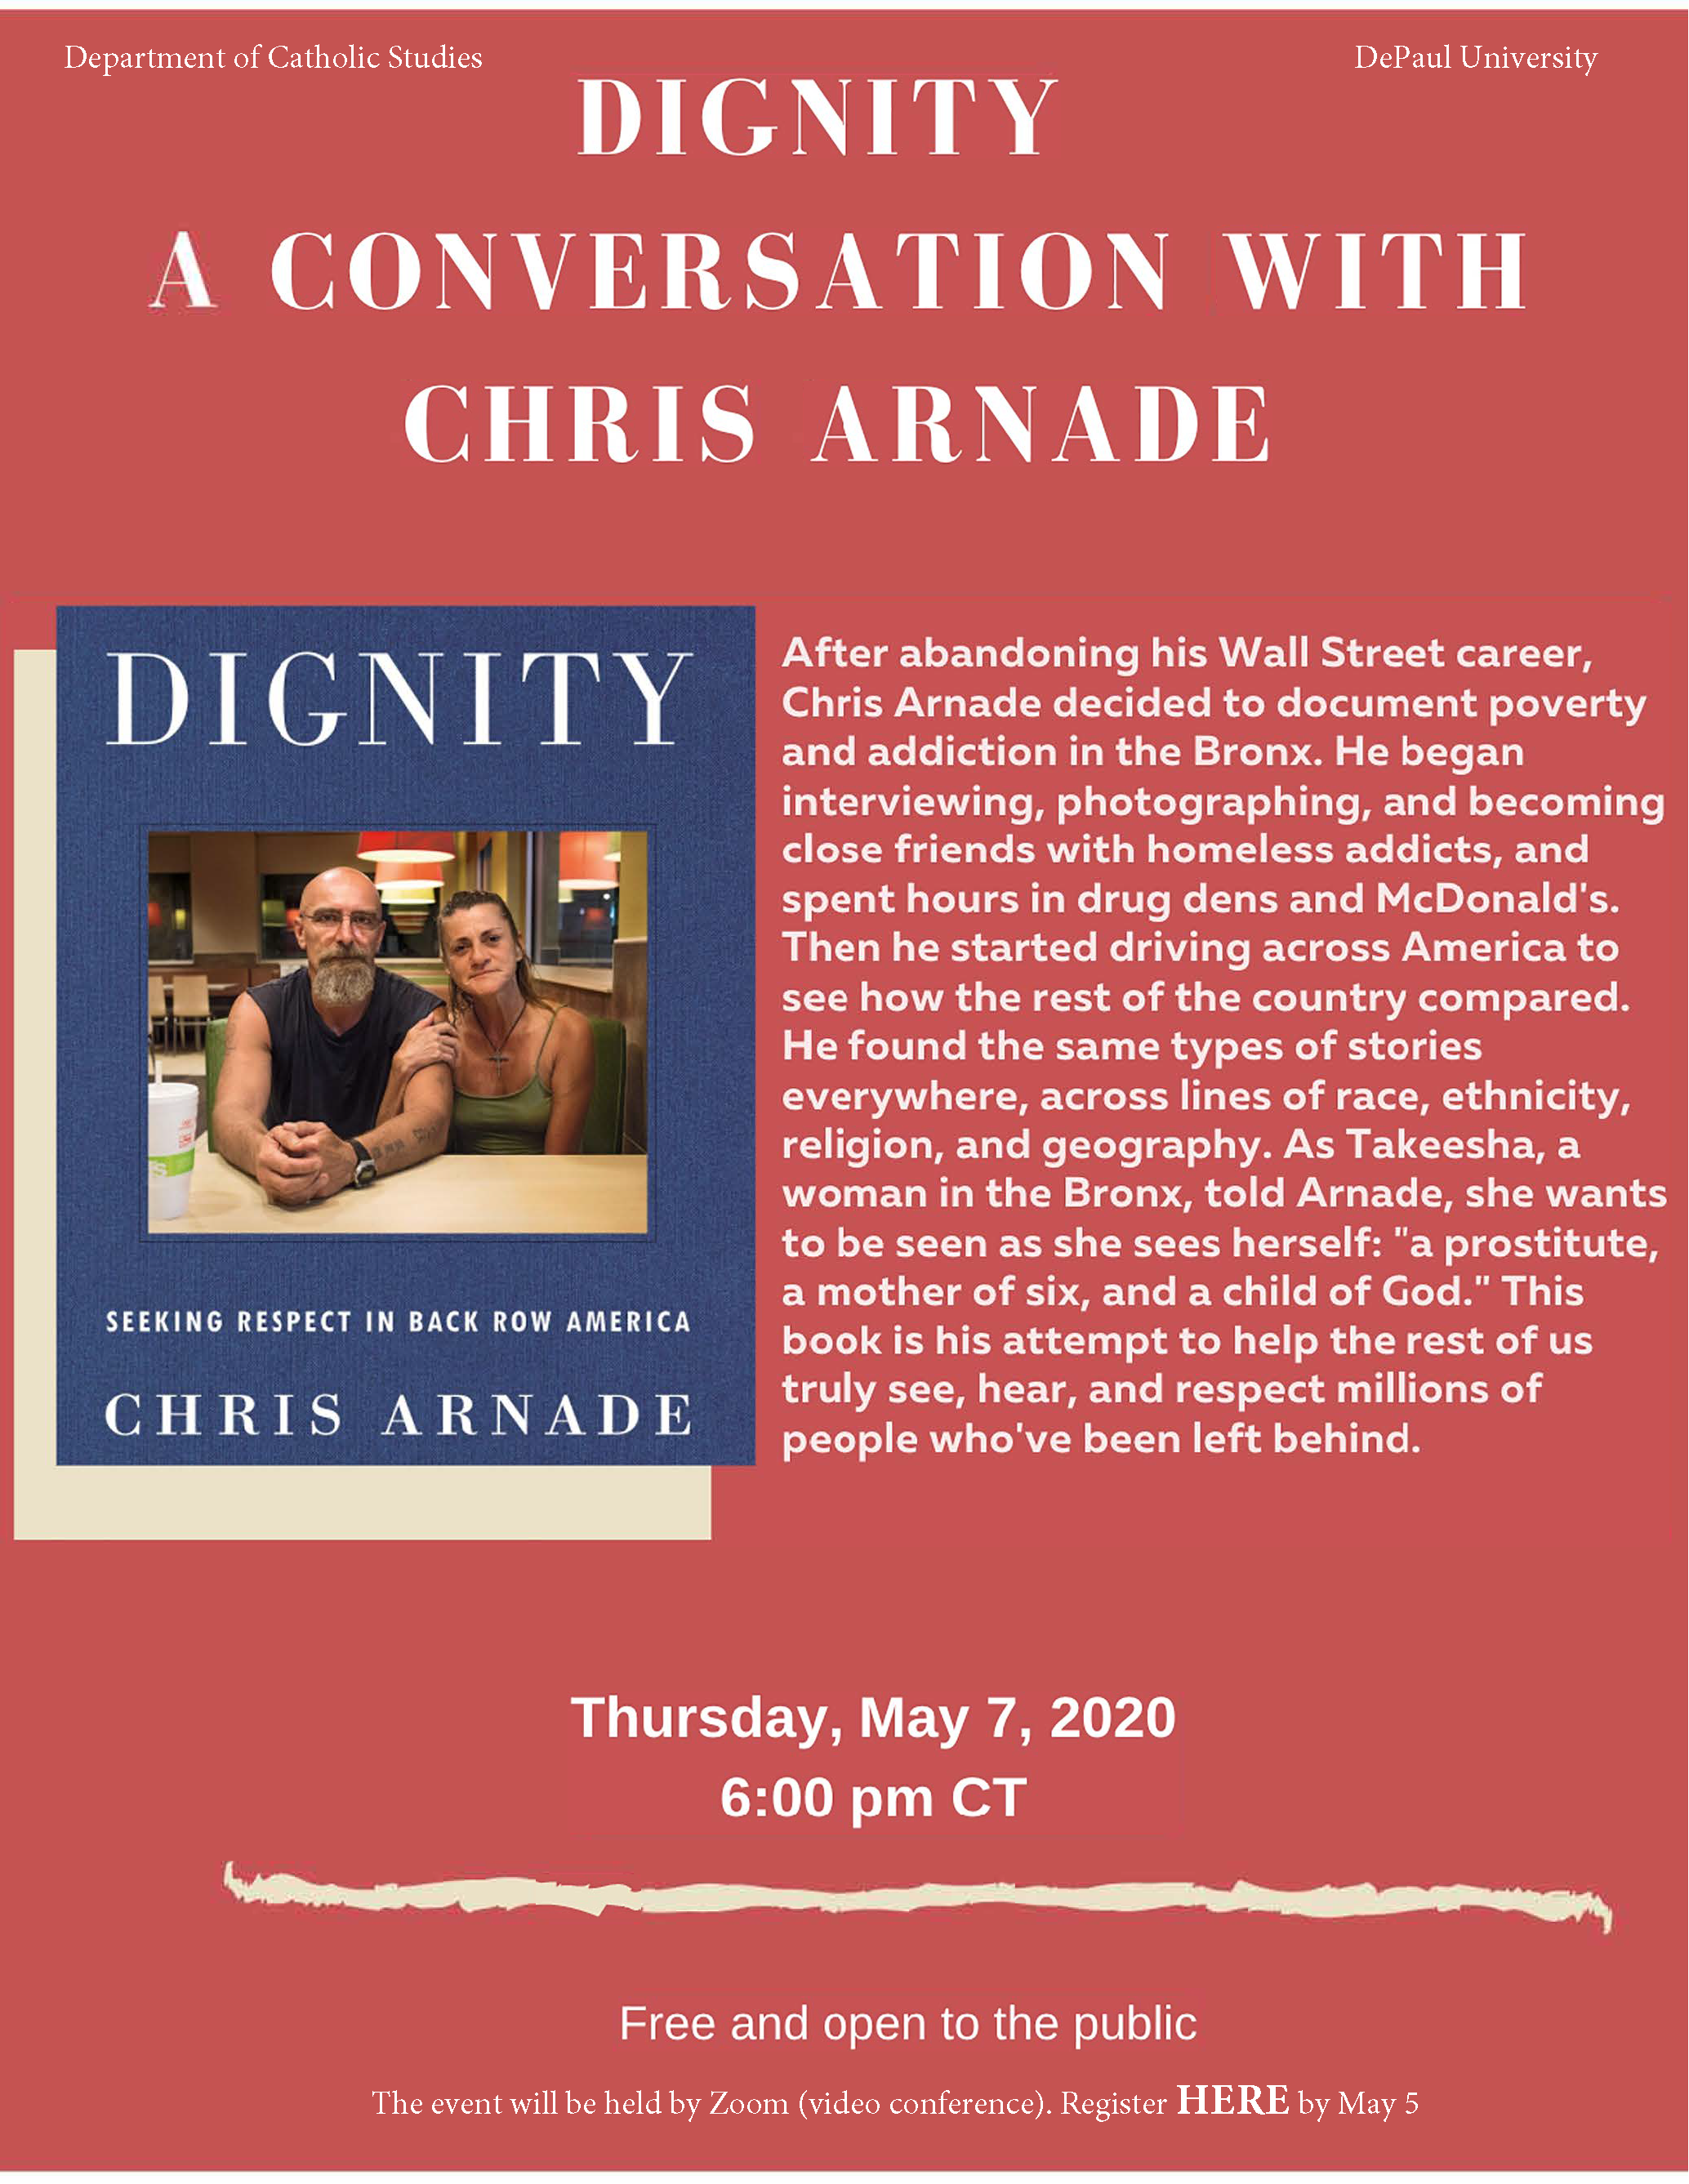 A conversation with Chris Arnade